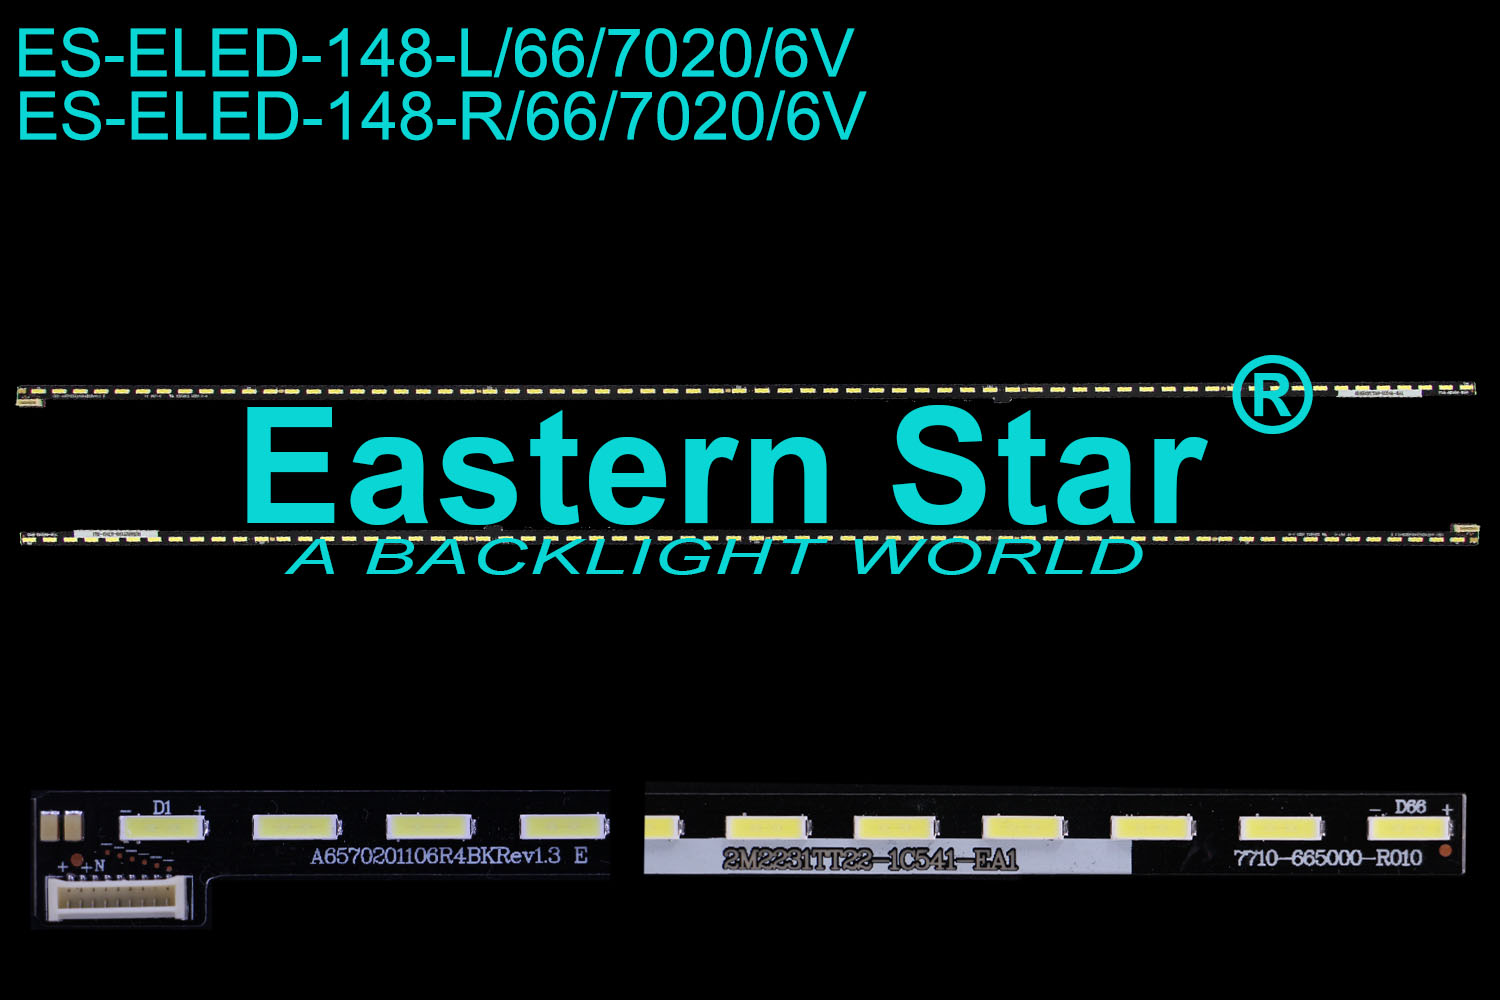 ES-ELED-148 ELED/EDGE TV backlight use for Skyworth 65'' 66LEDs A6570201106L/R4BKRev1.3 LED STRIPS(2)